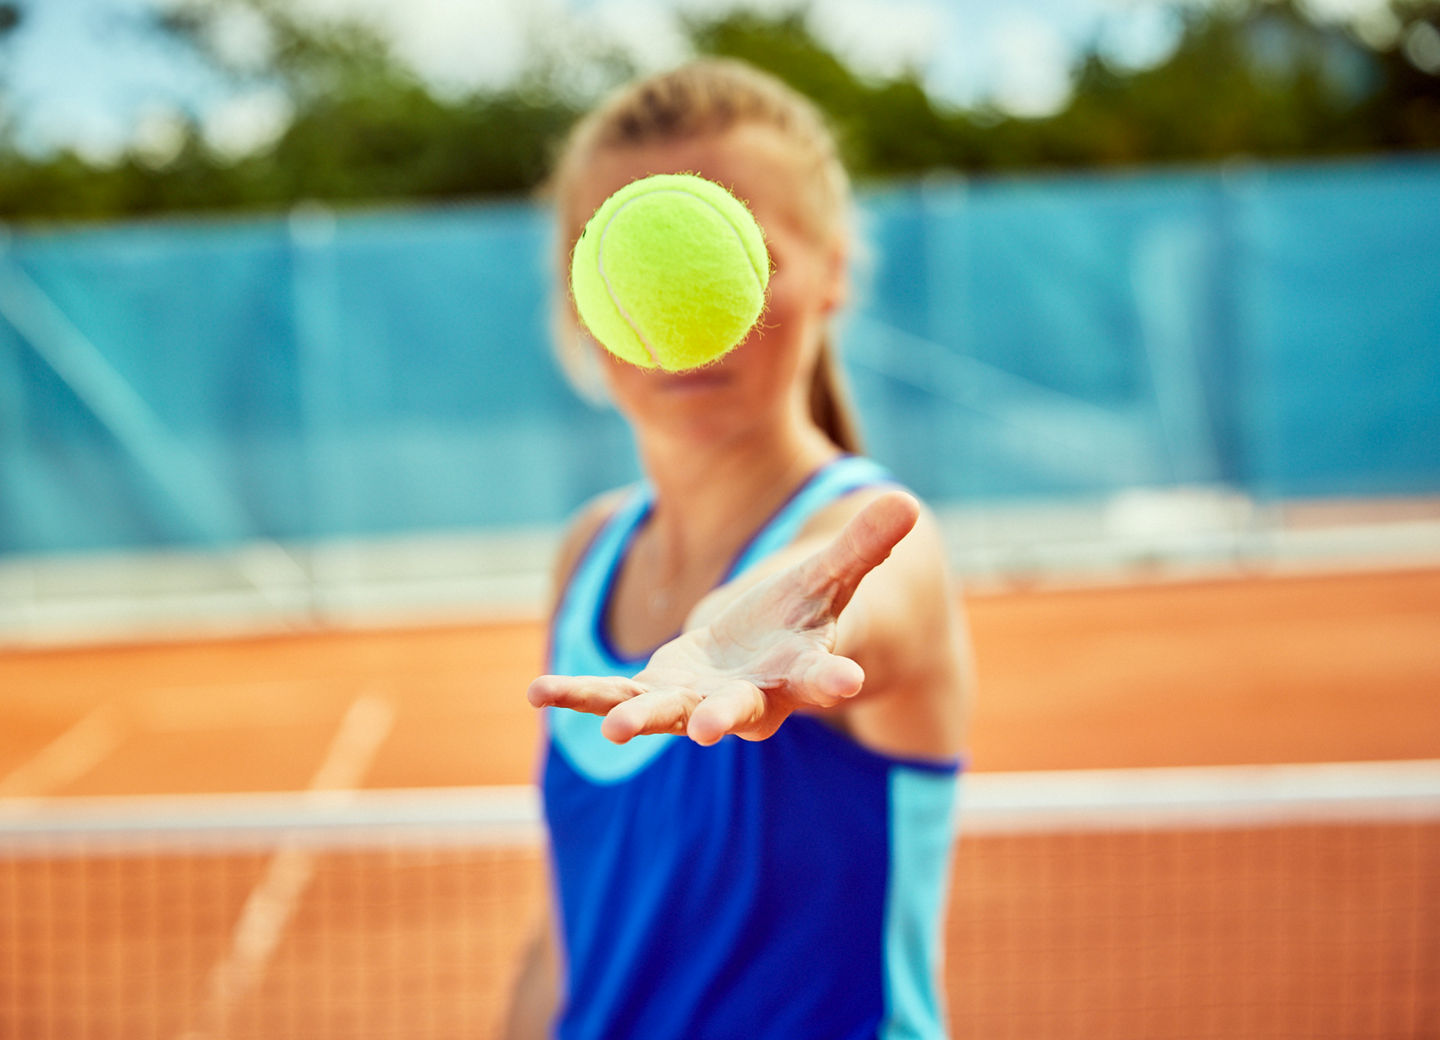 Spielerin wirft einen Tennisball hoch